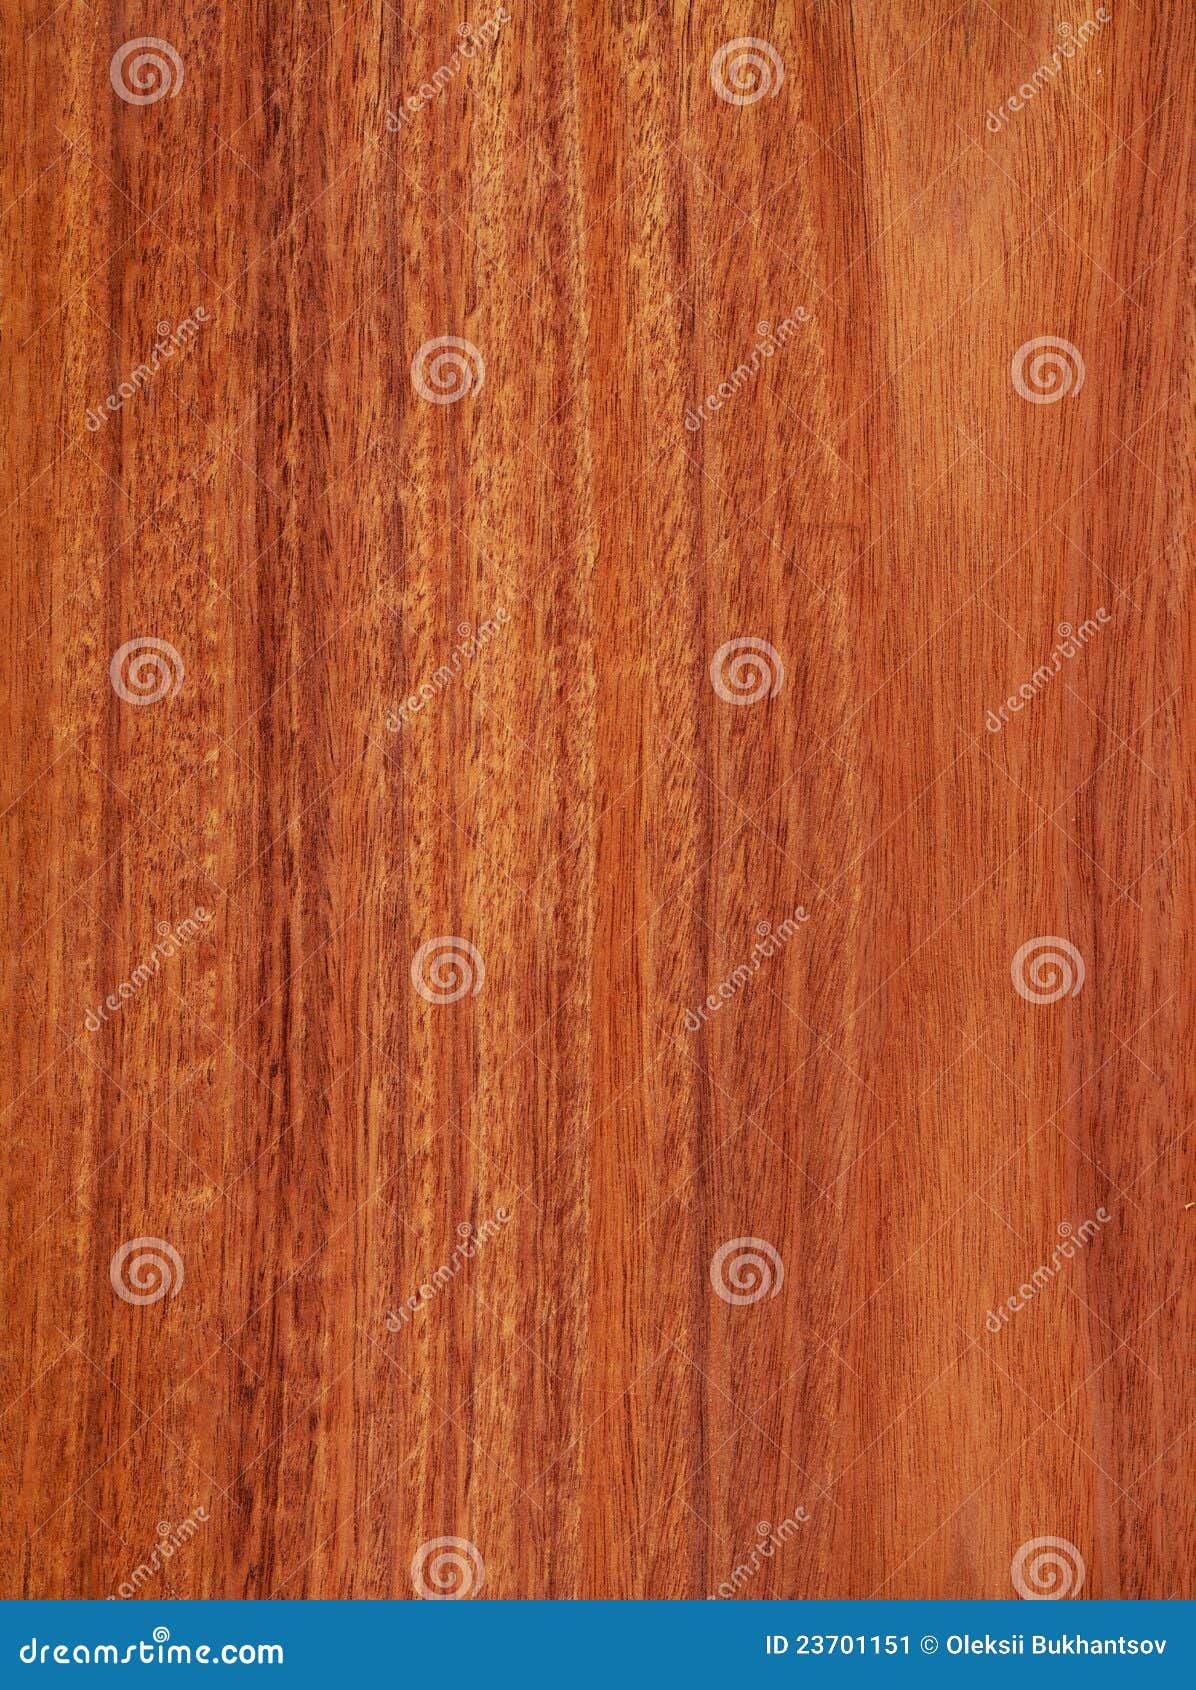 cherry mahogany (wood texture)